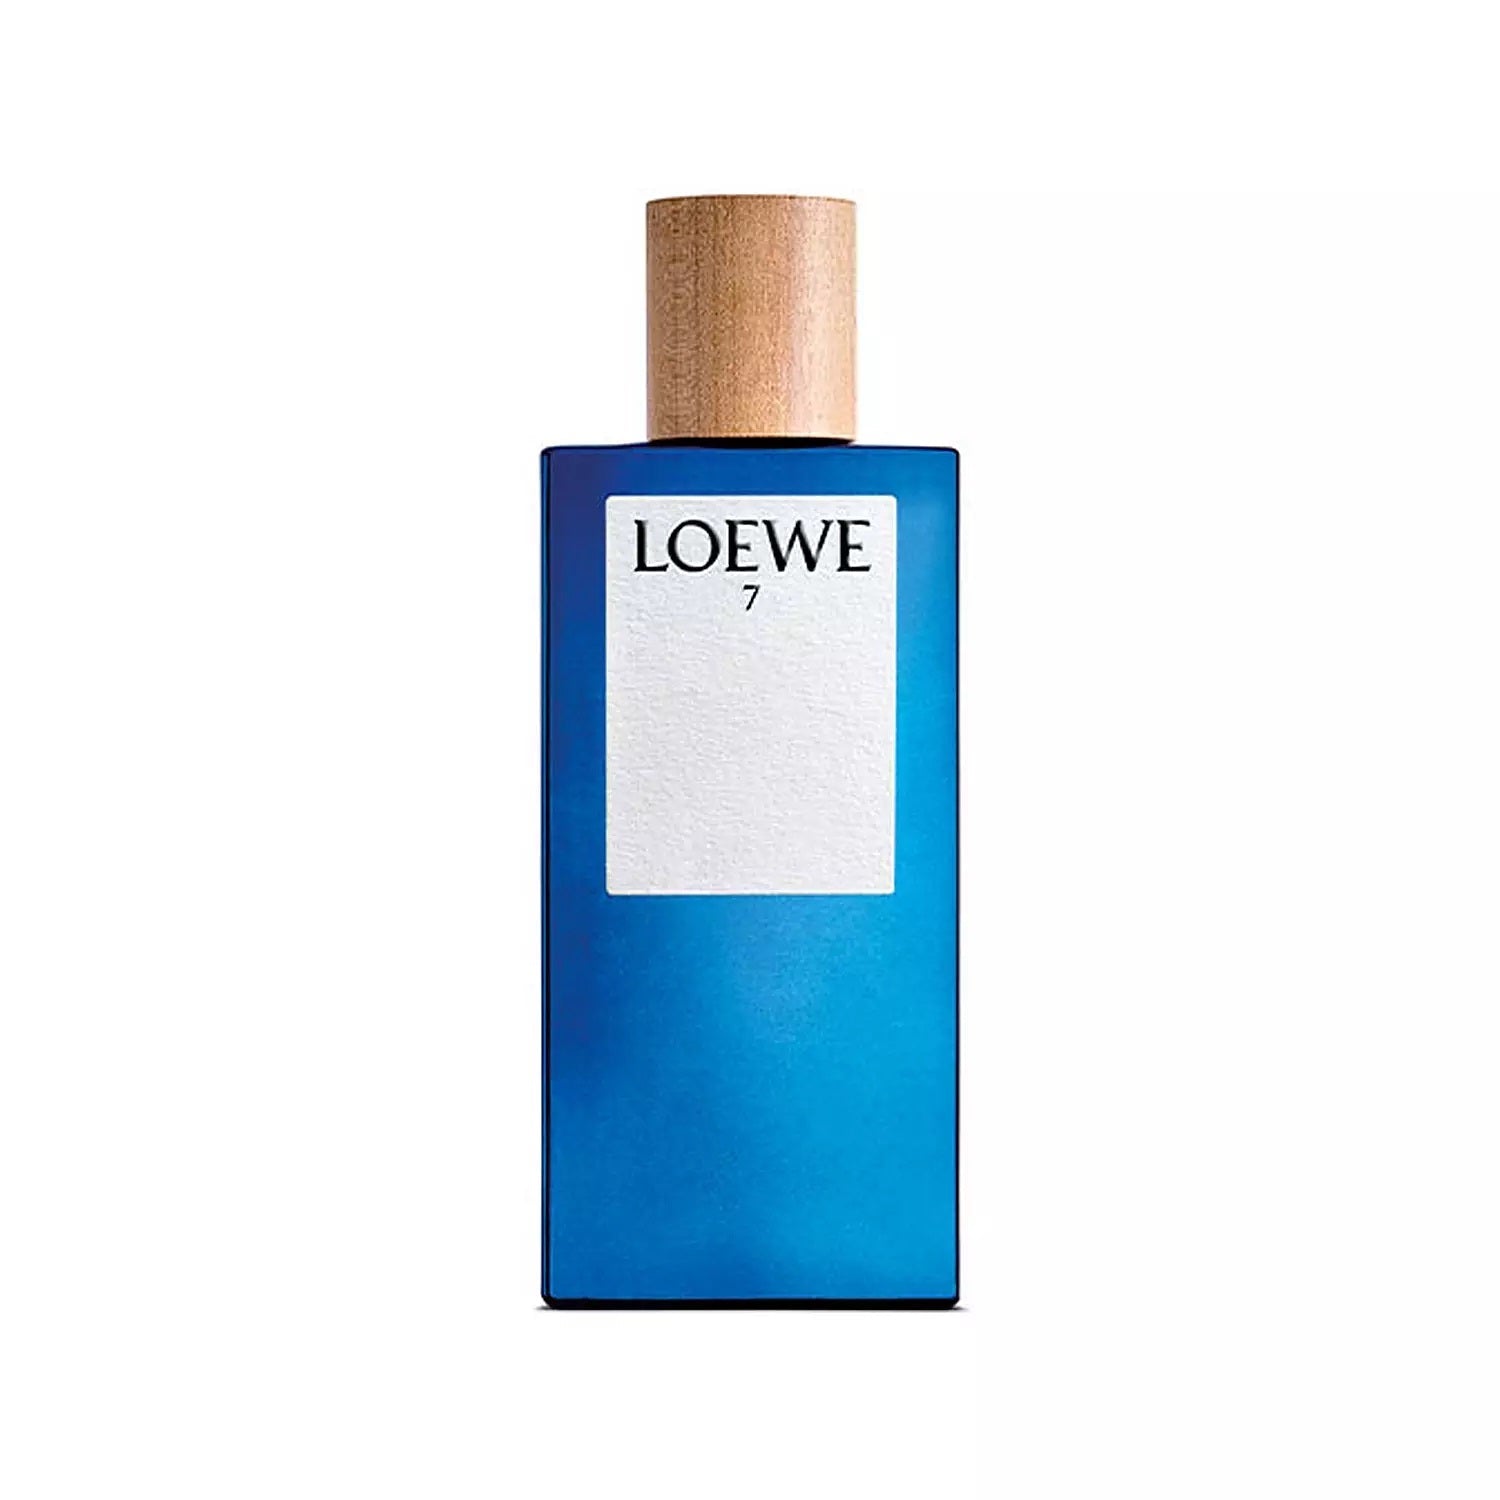 Loewe 7 Eau De Toilette Spray 100ml - Feel Gorgeous